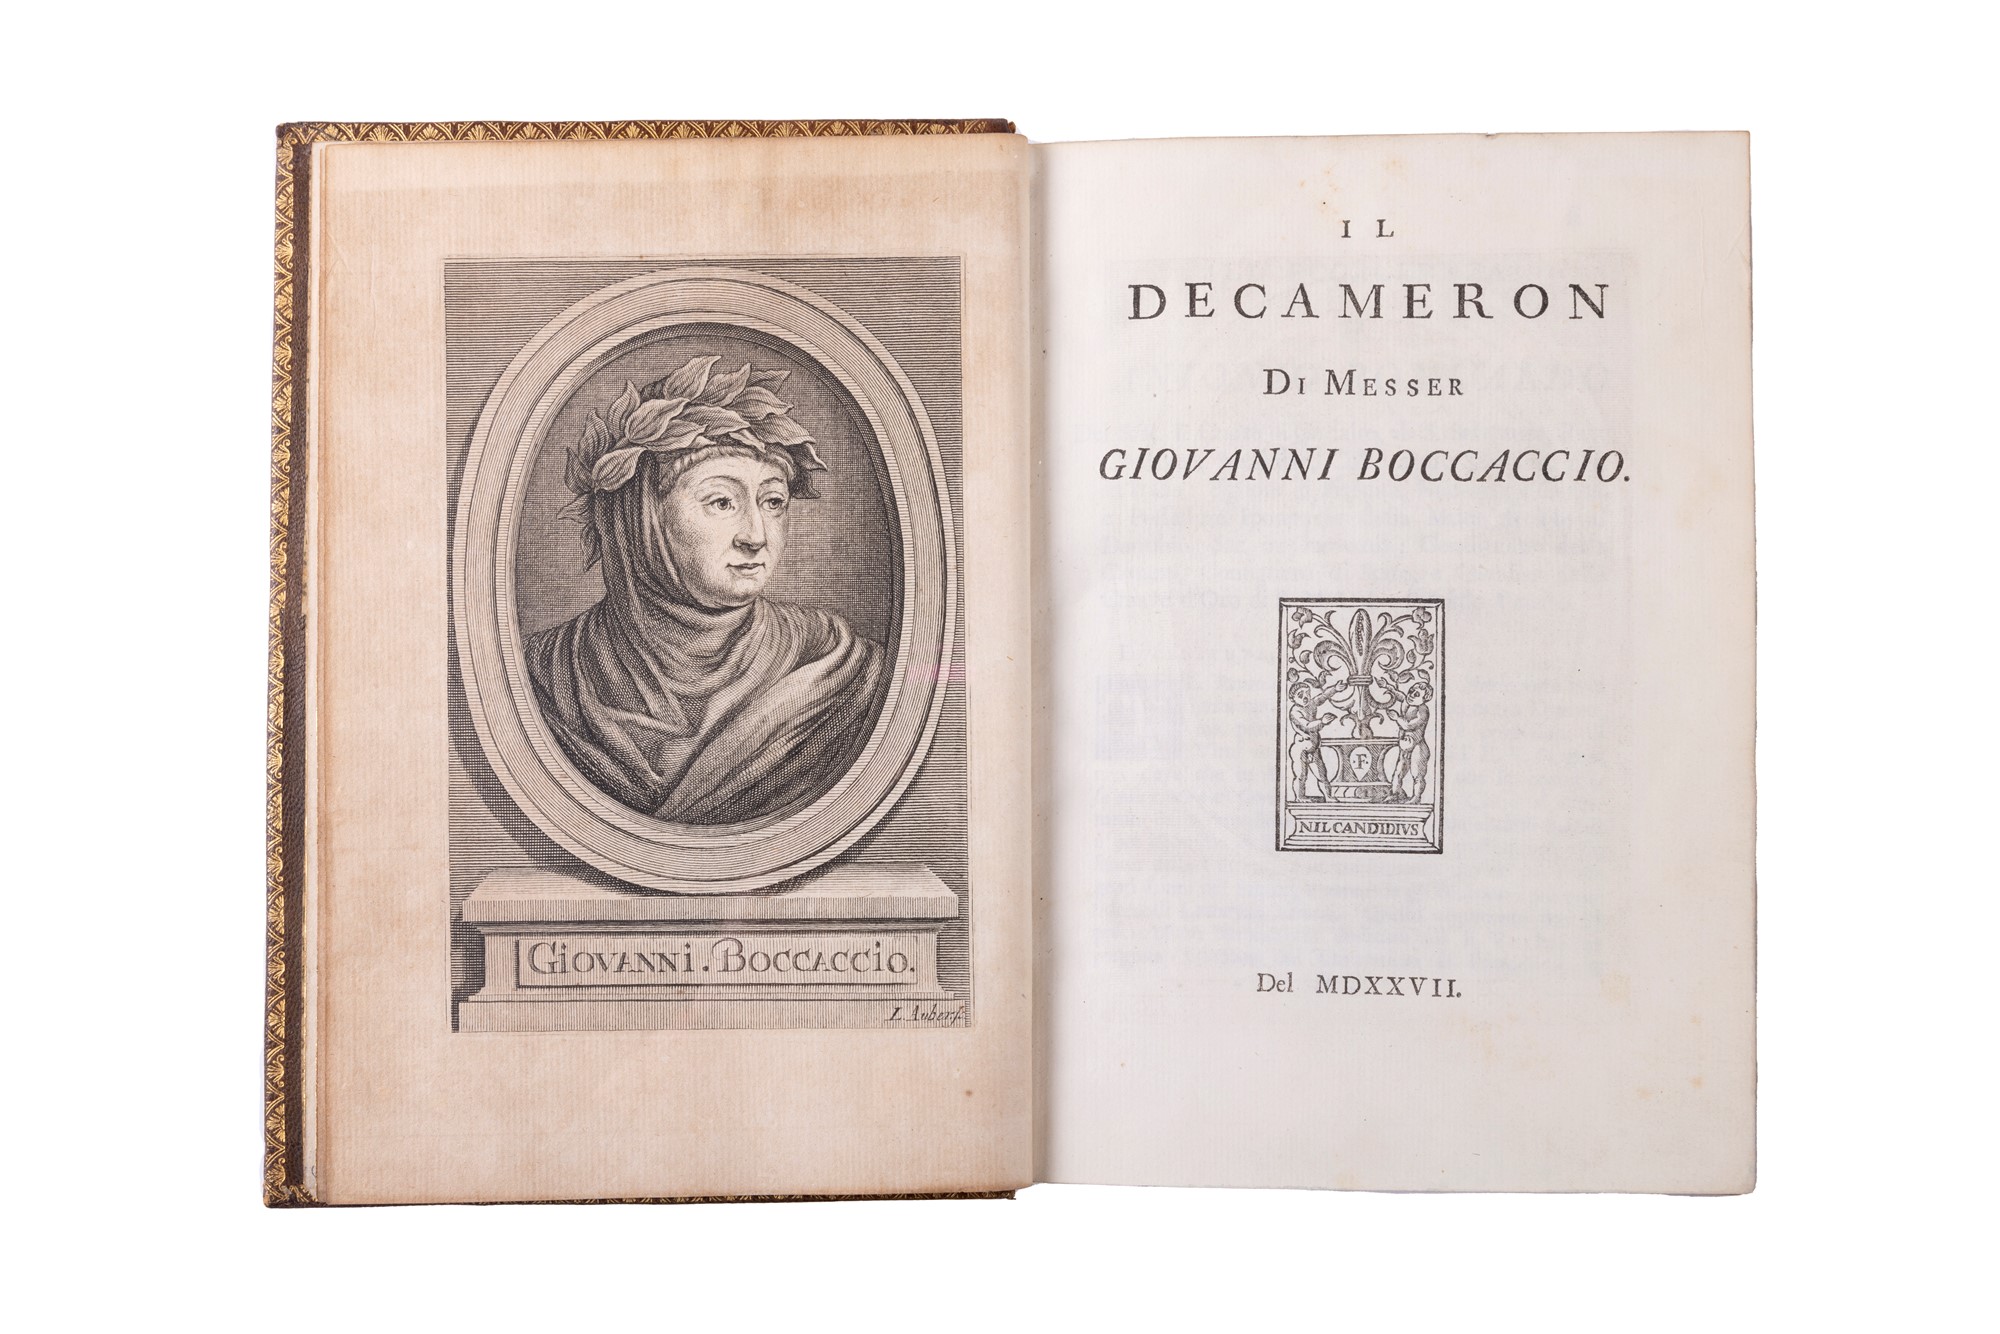 Boccaccio, Giovanni - The Decameron by Messer Giovanni Boccaccio. Of 1527.